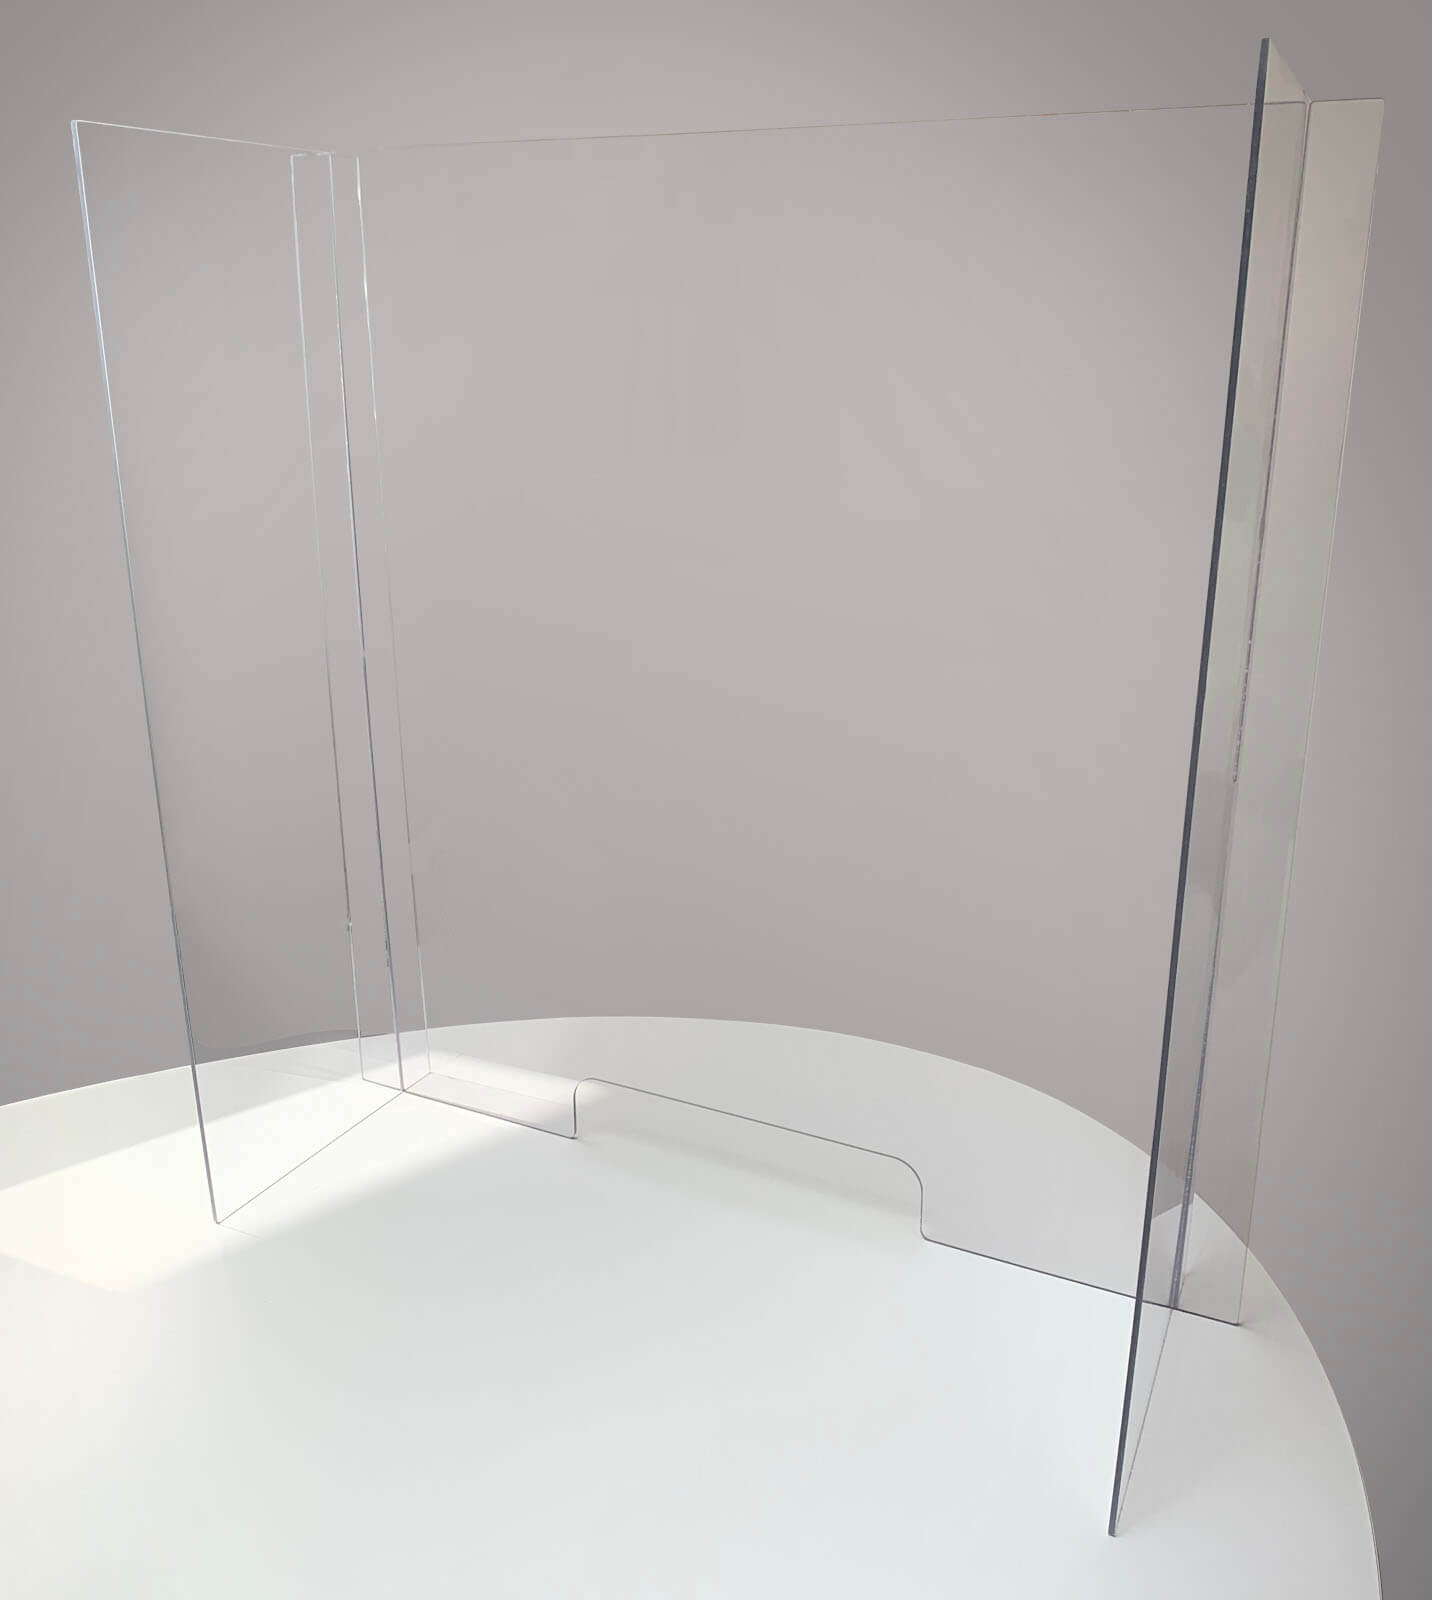 Hygieneschutzwand Thekenaufsatz SpuckSchutz Acrylglas mit Durchreiche Schutzwand 